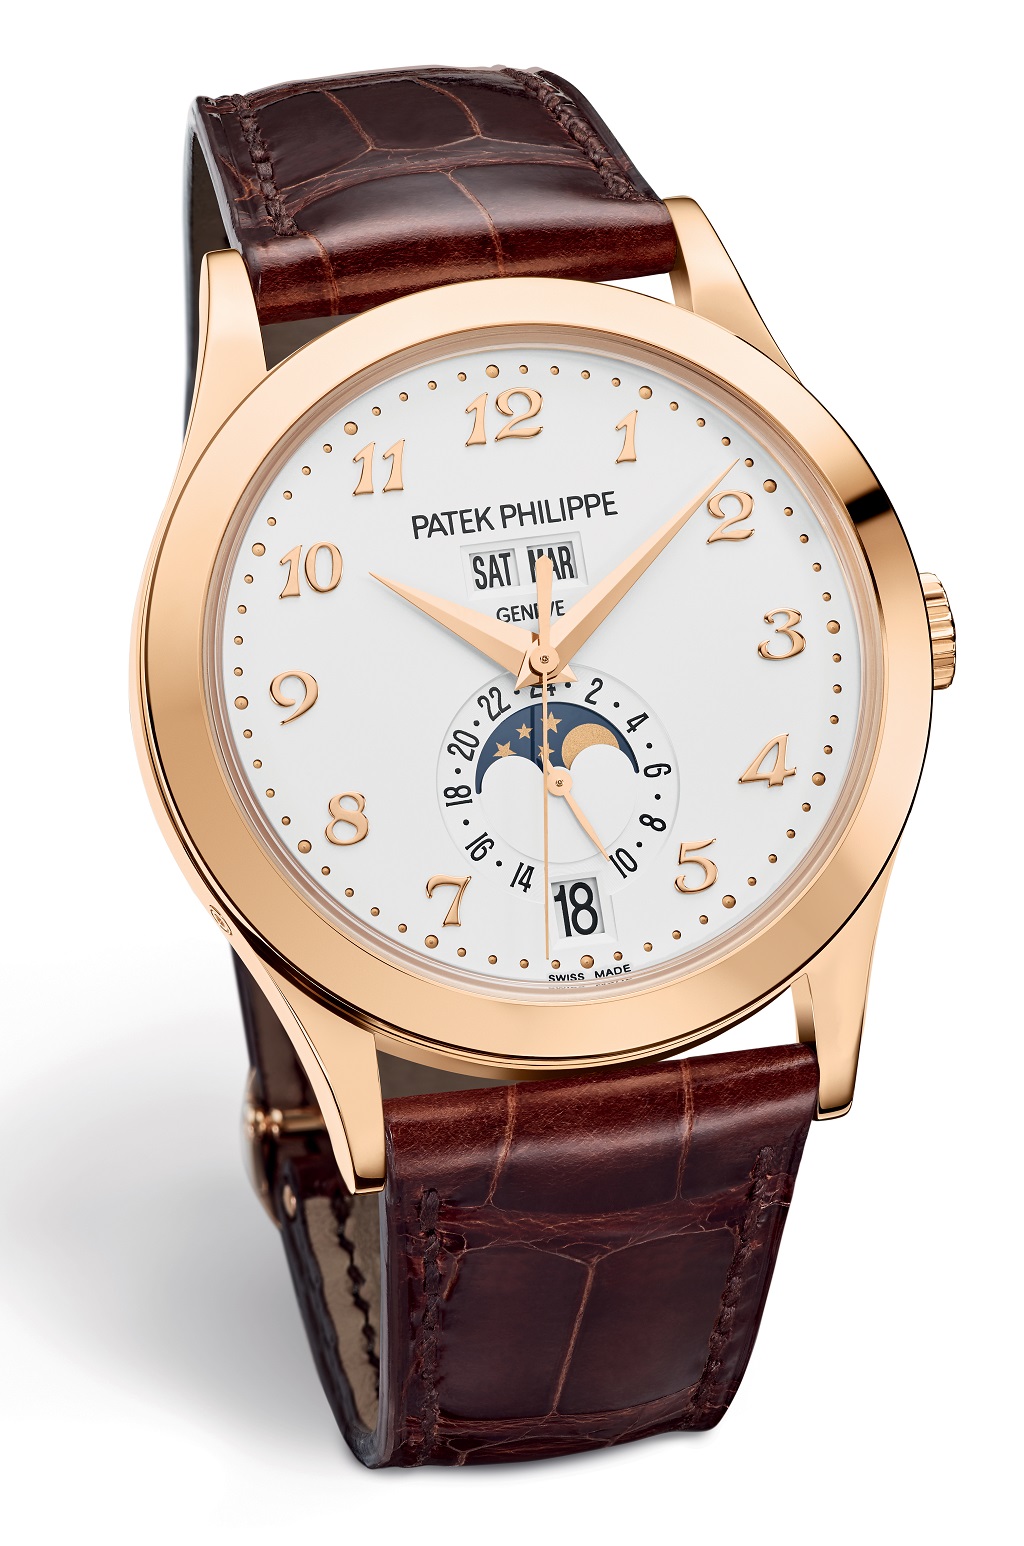 Patek Philippe Ref. 5396 Annual Calendar rose gold watch